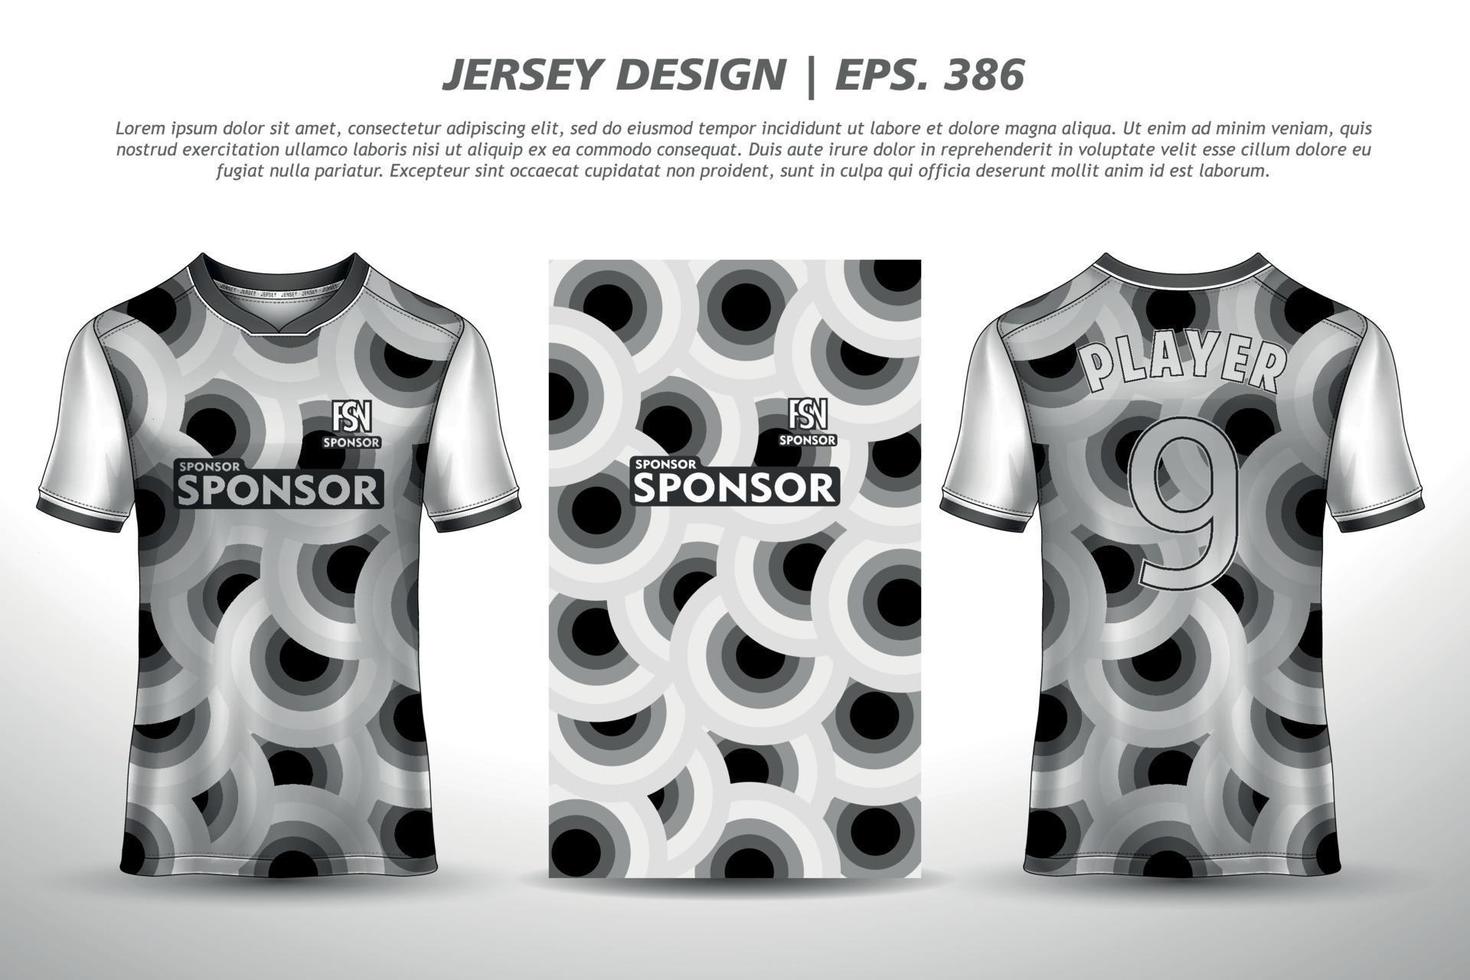 maglietta a sublimazione in jersey design premium motivo geometrico incredibile collezione vettoriale per calcio calcio corse ciclismo giochi motocross sport